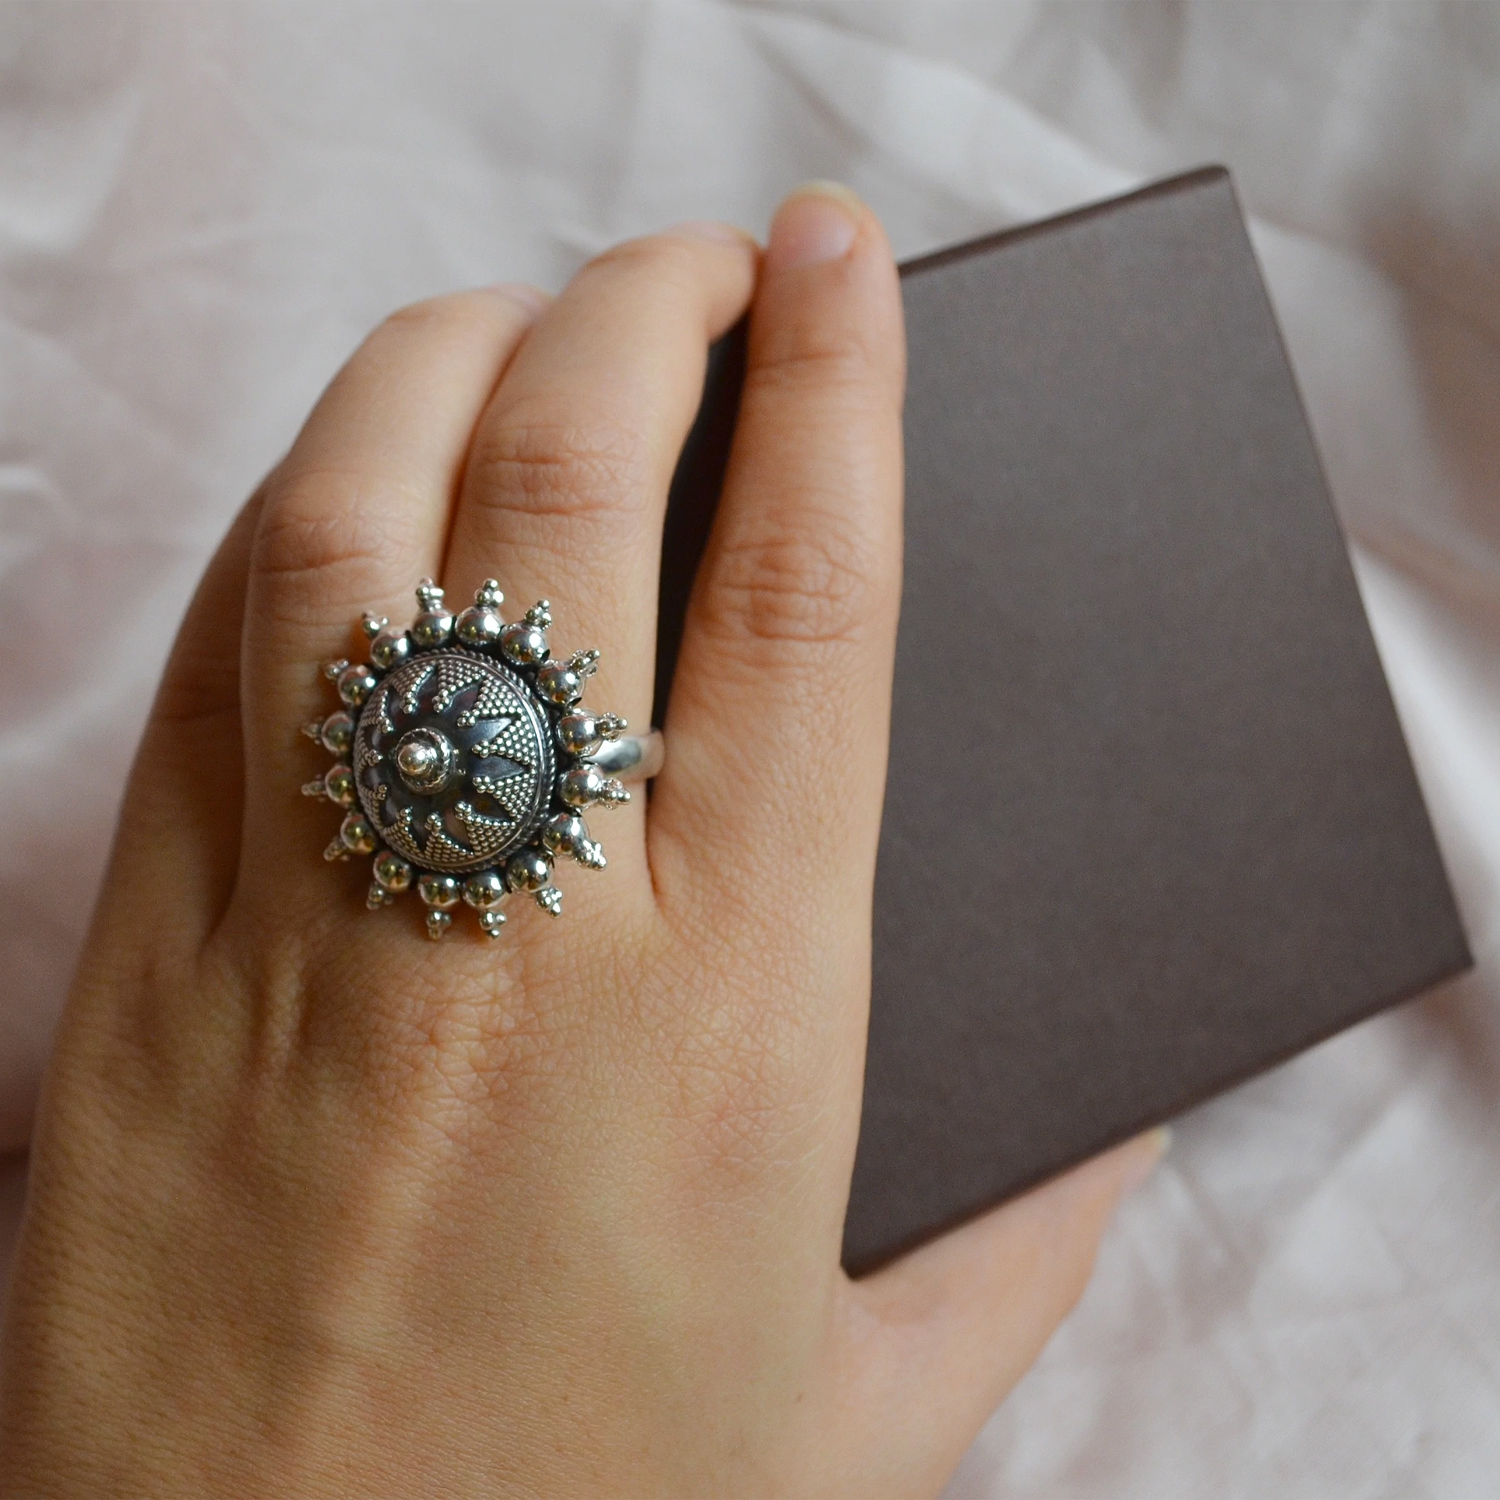 Flower Diamond Rings | Diamond Finger Ring Designs - PC Chandra